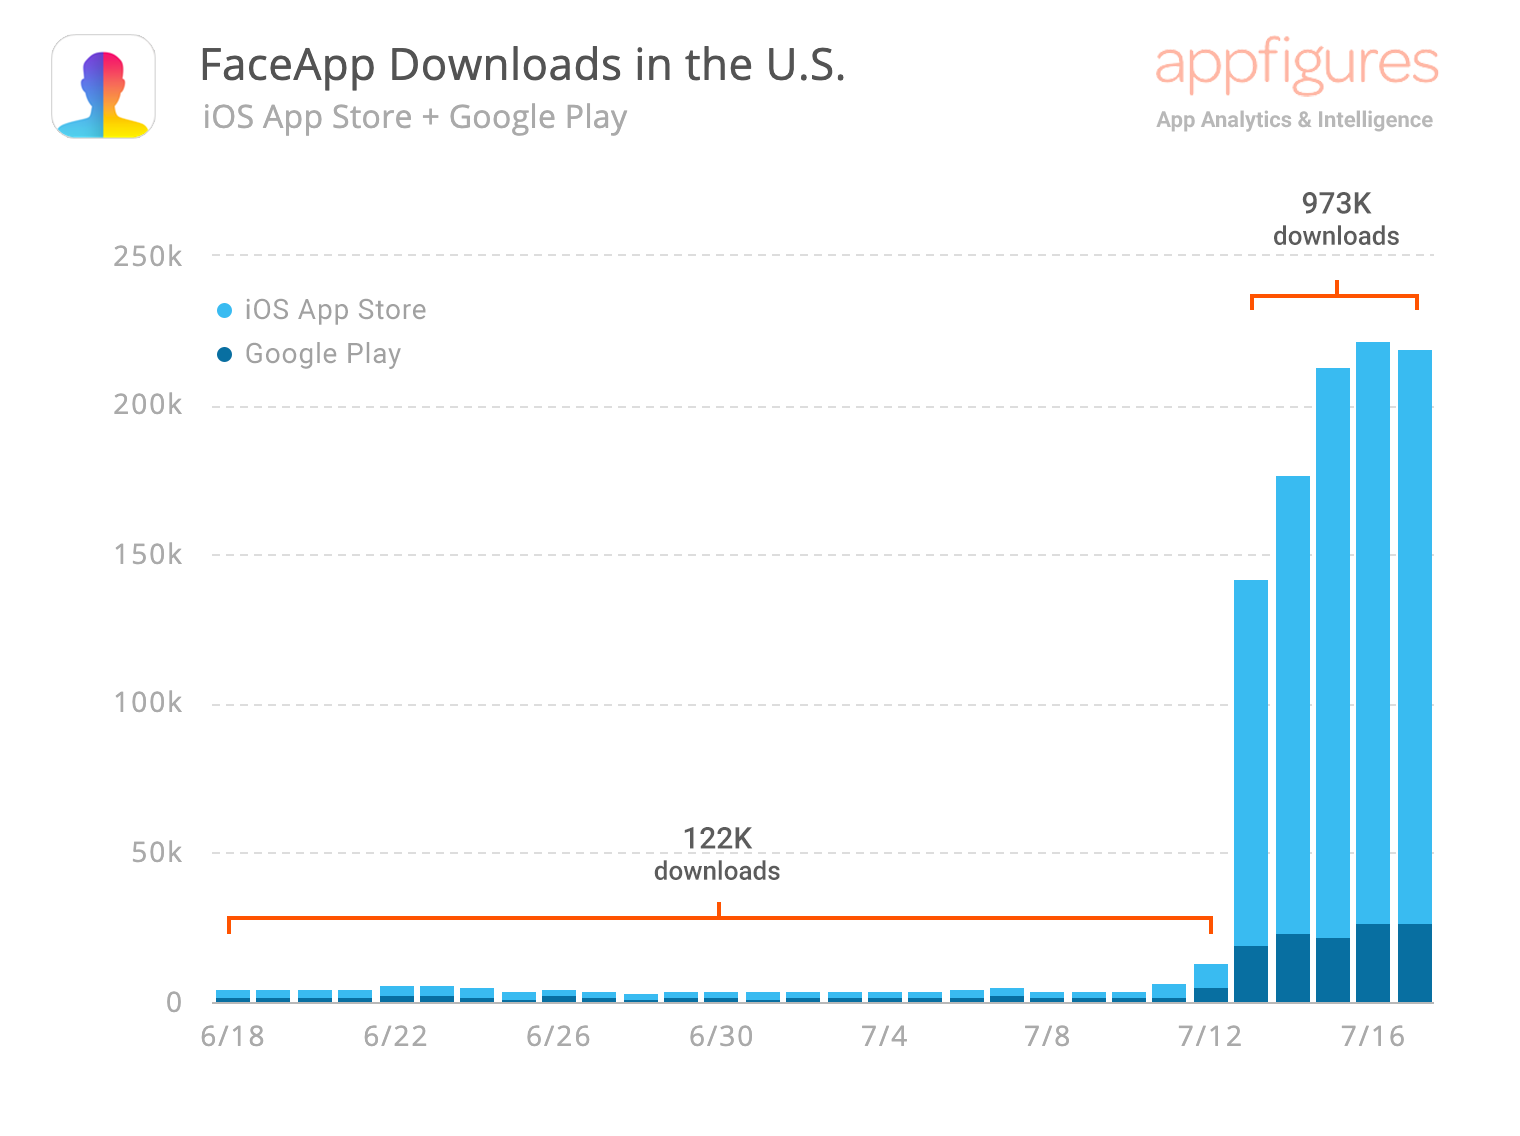 FaceApp download estimates by Appfigures